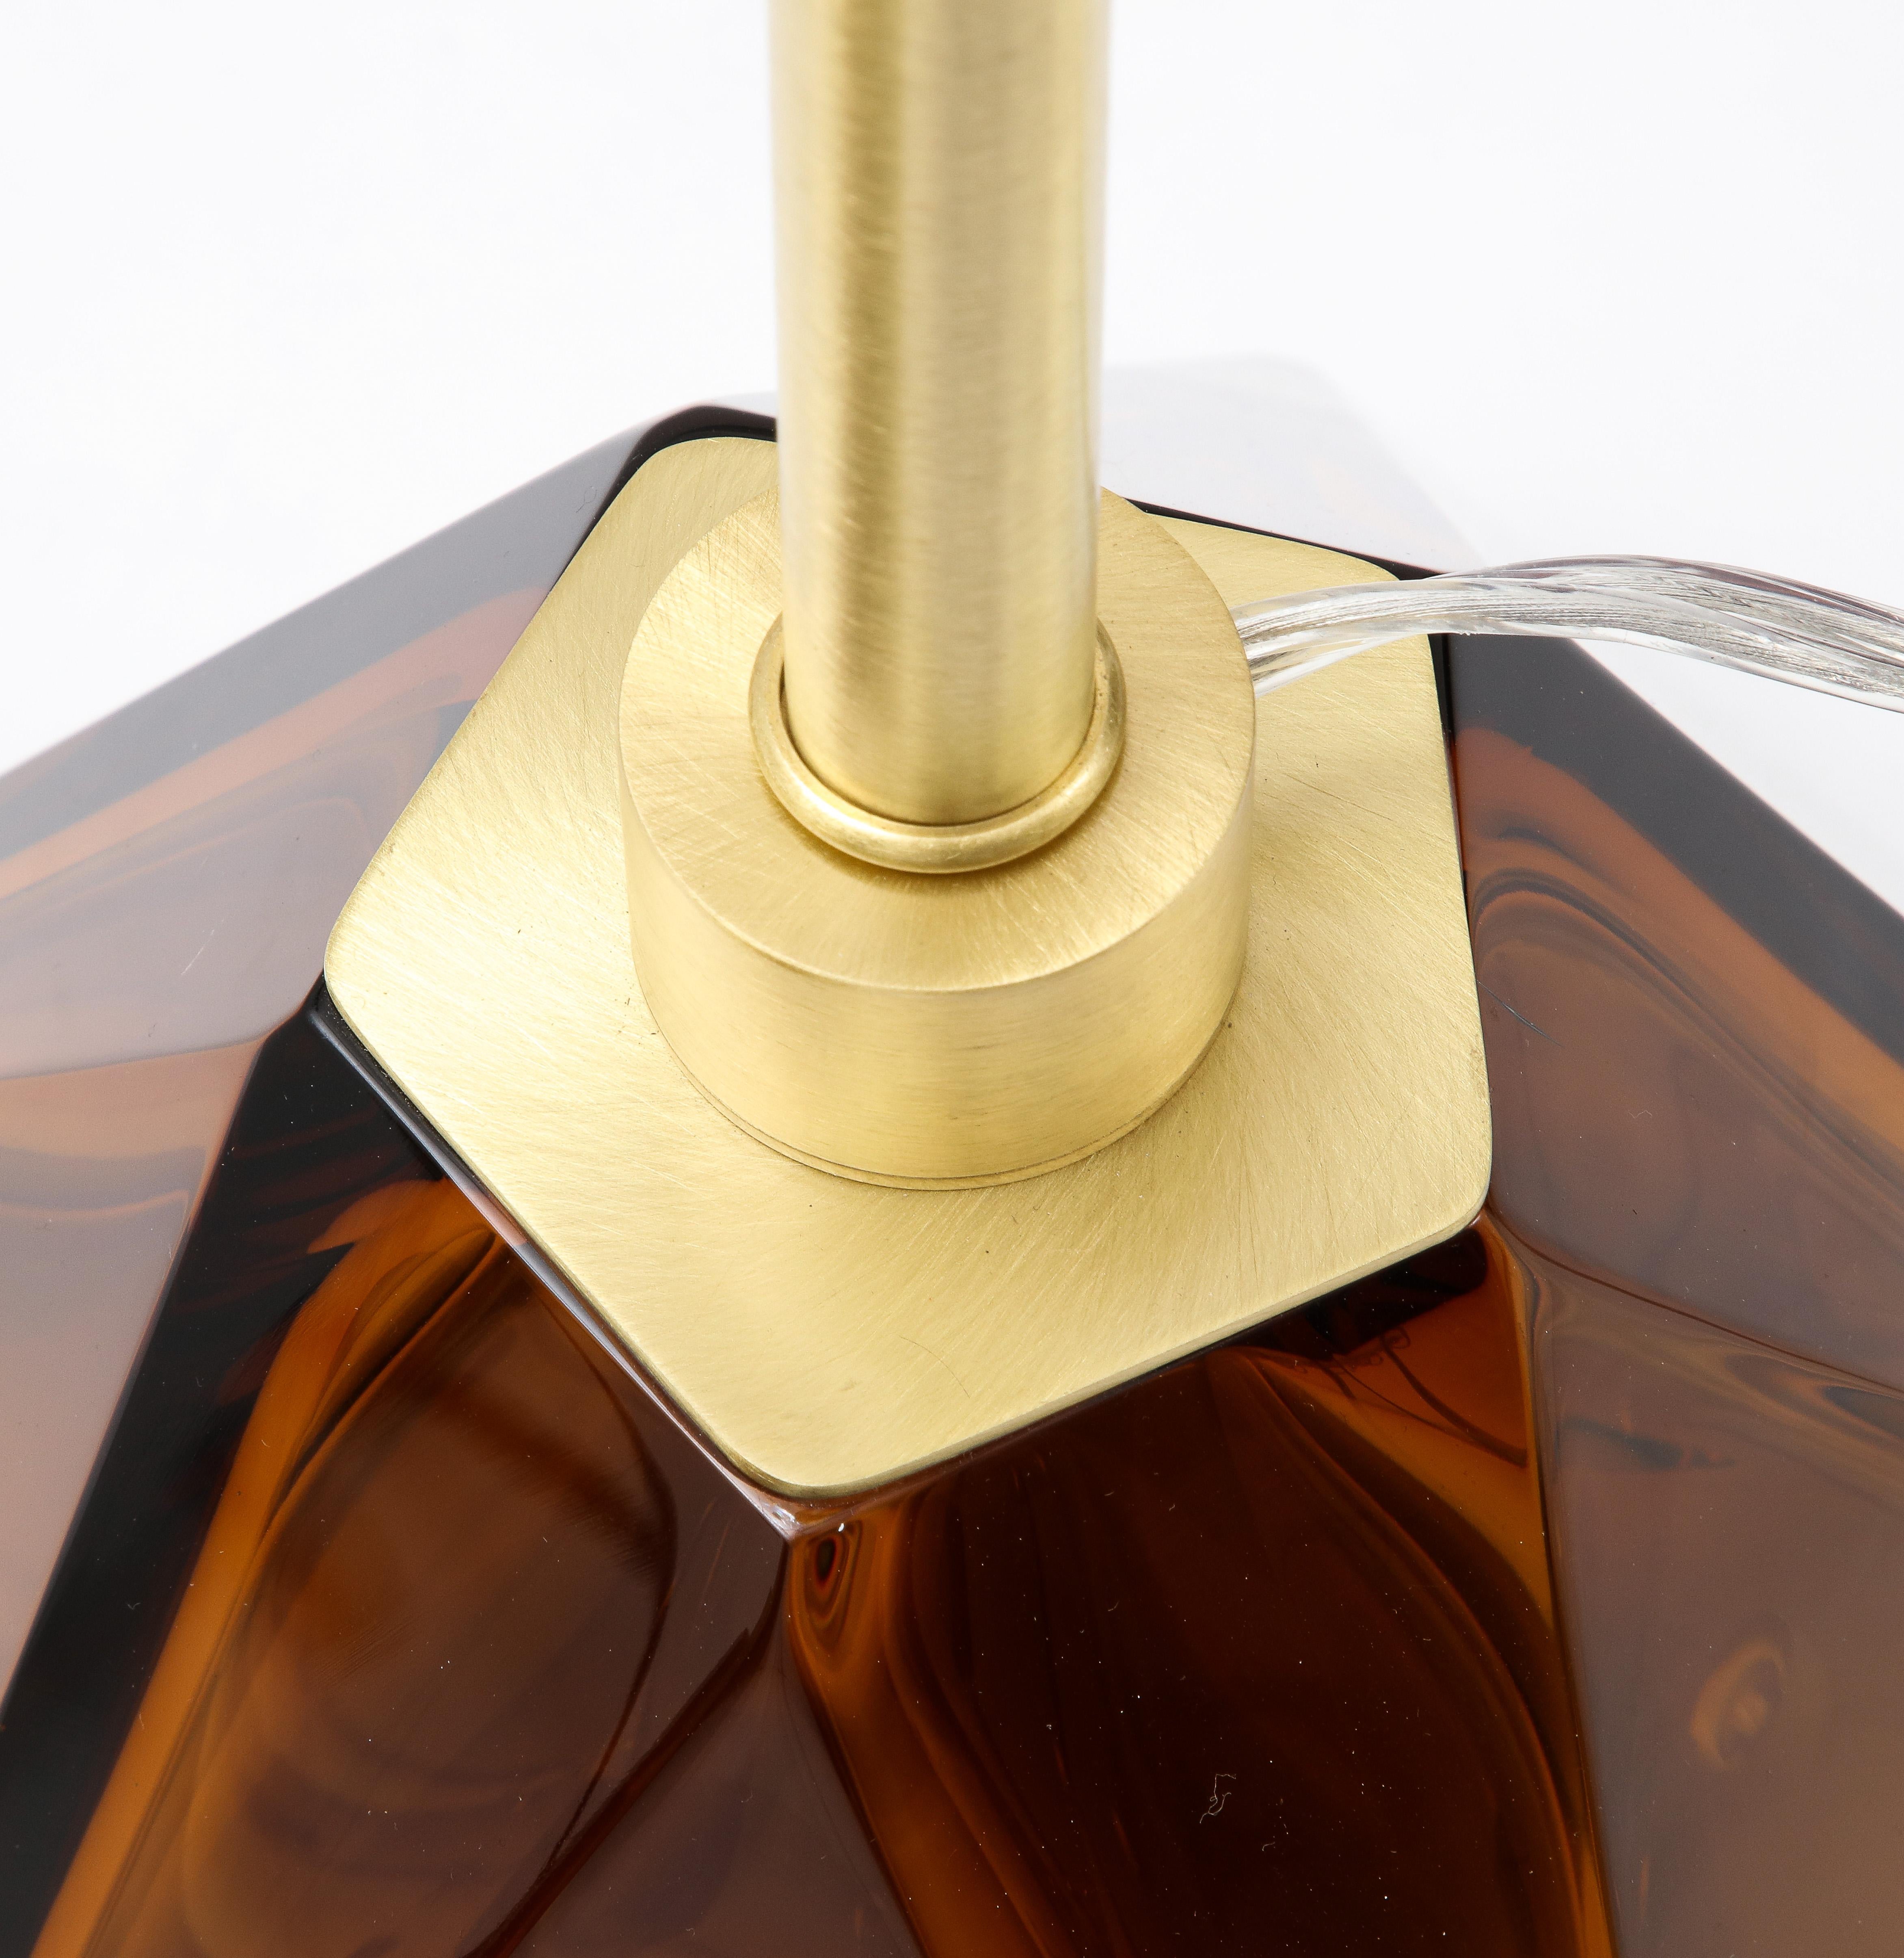 Paire de lampes en verre de Murano de couleur tabac ou ambre foncé (miel), fabriquées à la main et signées par le maître verrier italien Alberto Donà. Ces lampes sont solides et lourdes et ressemblent presque à des bijoux. La couleur est riche et